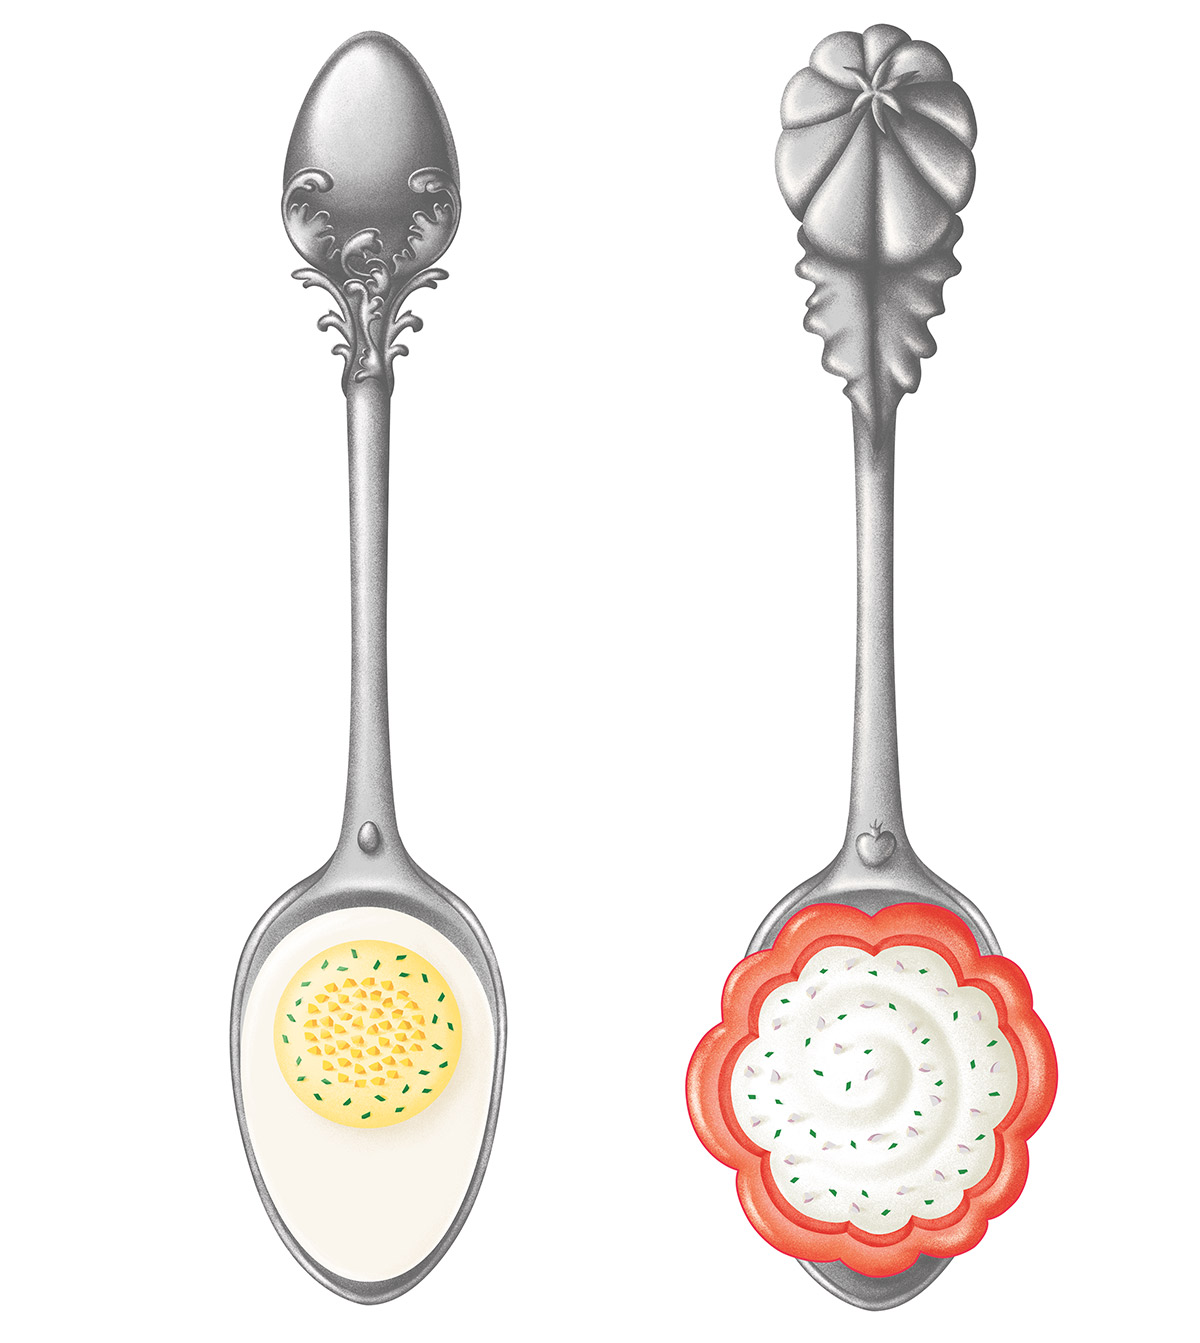 illustration réaliste de cuillères en argent ornées d'un oeuf et d'une tomate par ichetkar recettes au yaourt